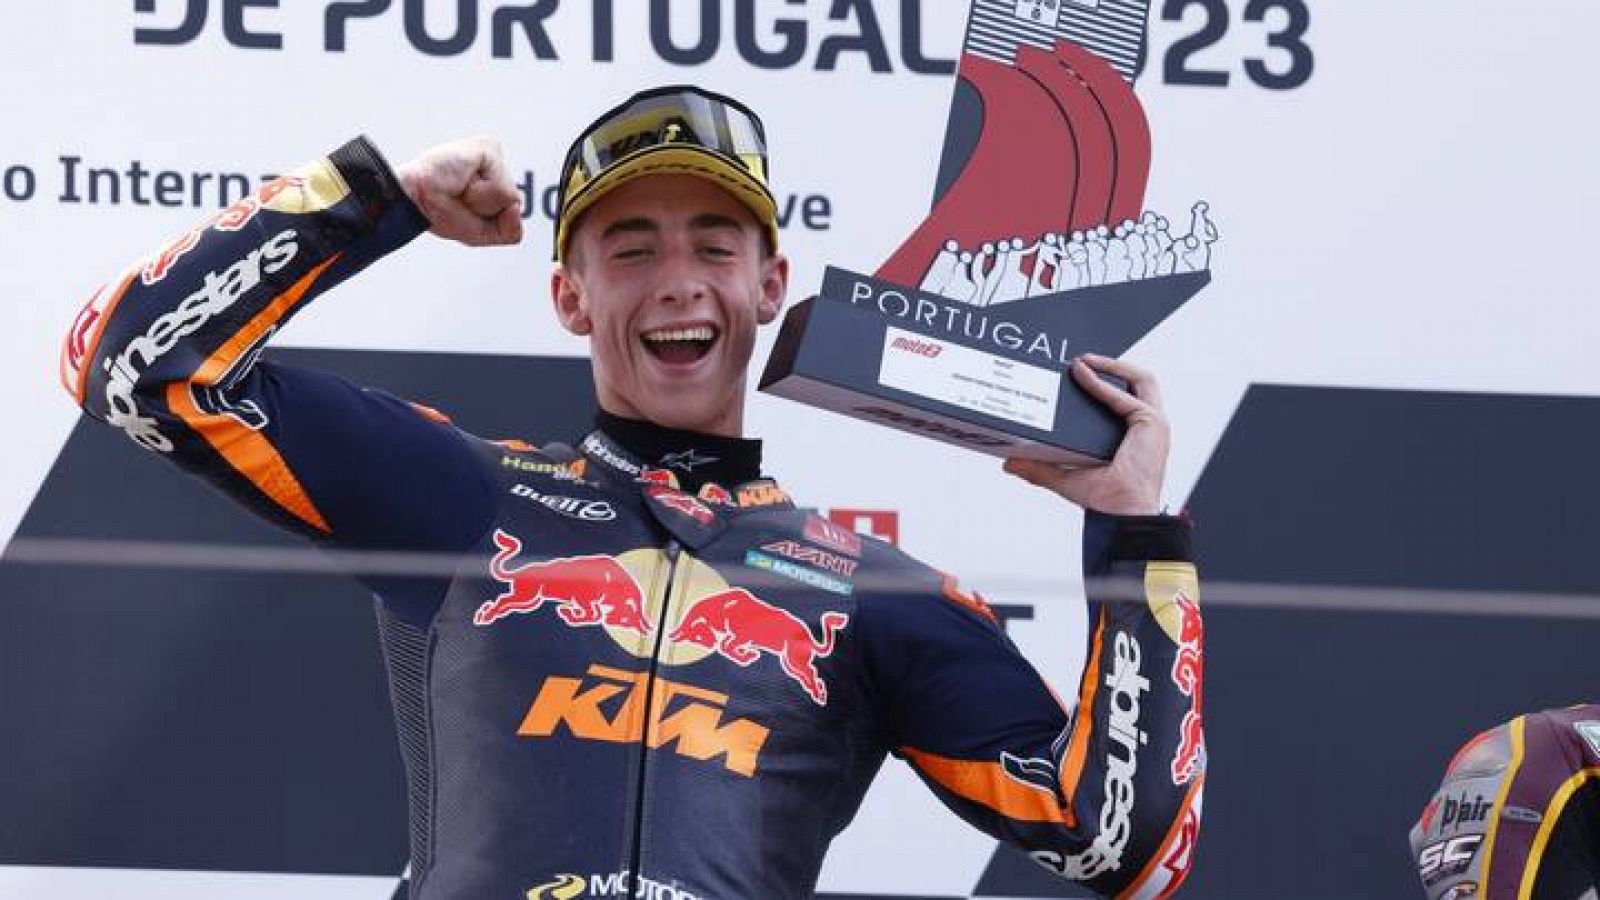 El español Pedro Acosta celebra su victoria en el GP de Portugal.